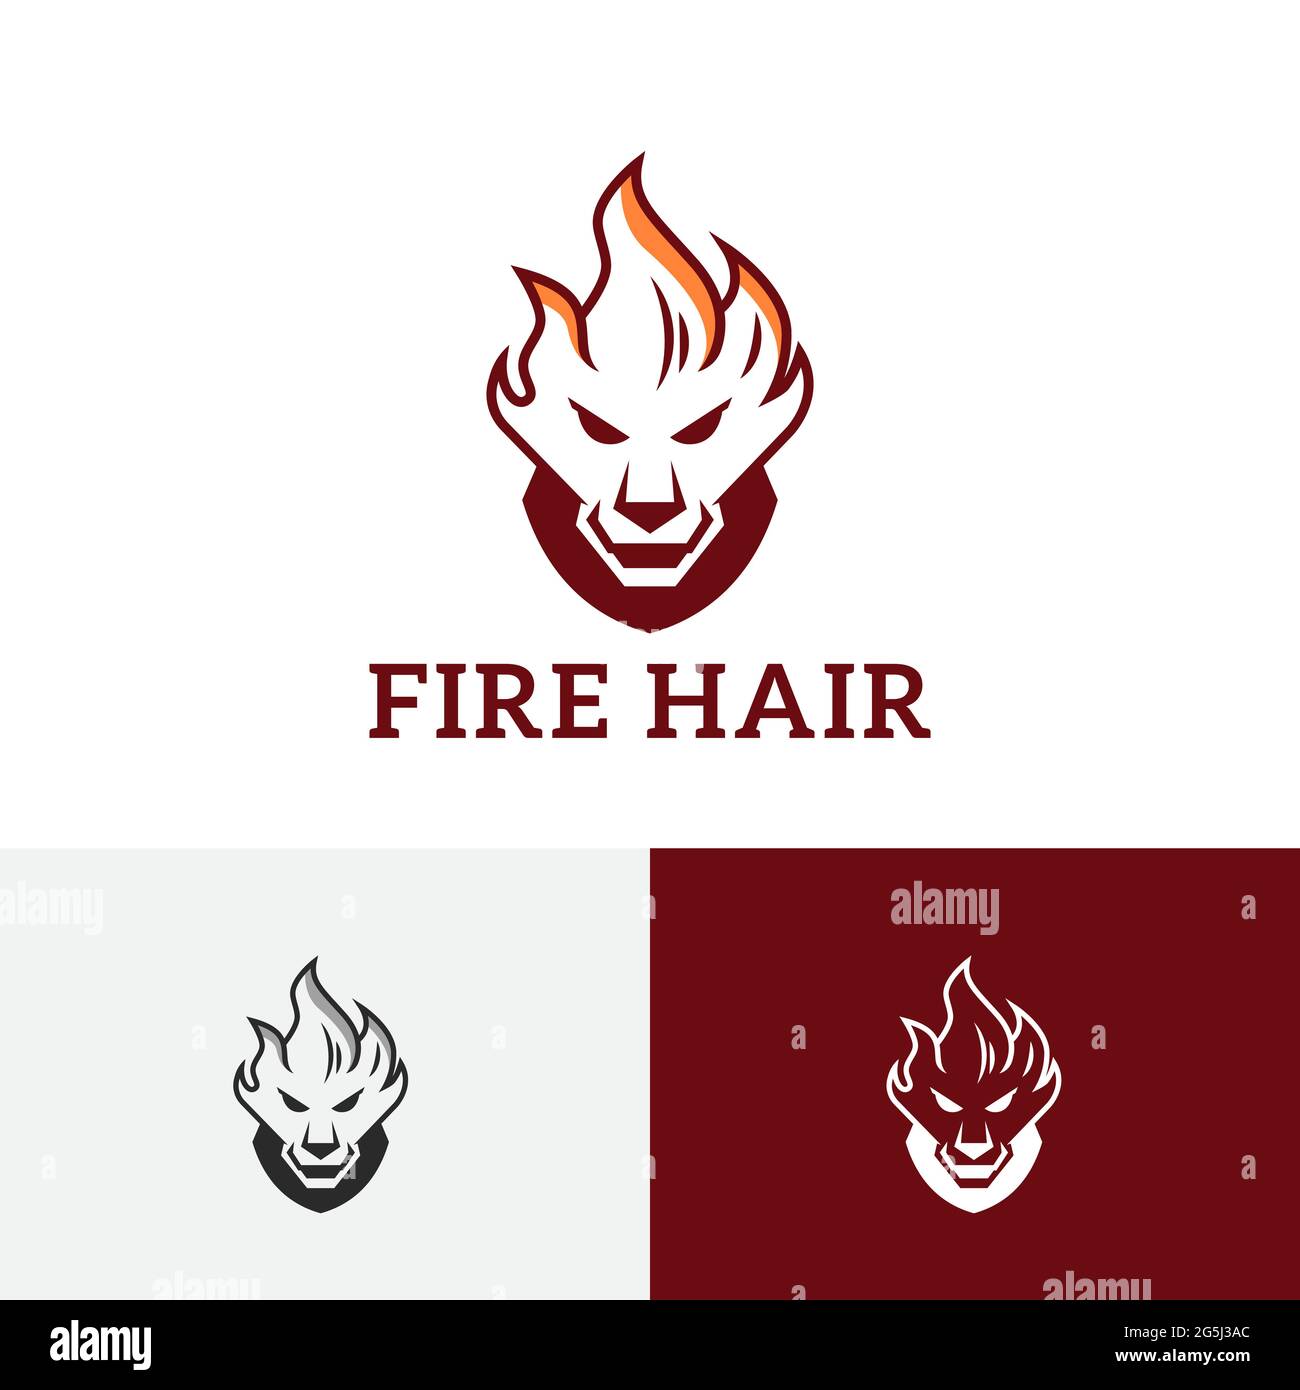 Fire Hair Tiger Lion Head Game Esport Logo Stock Vector